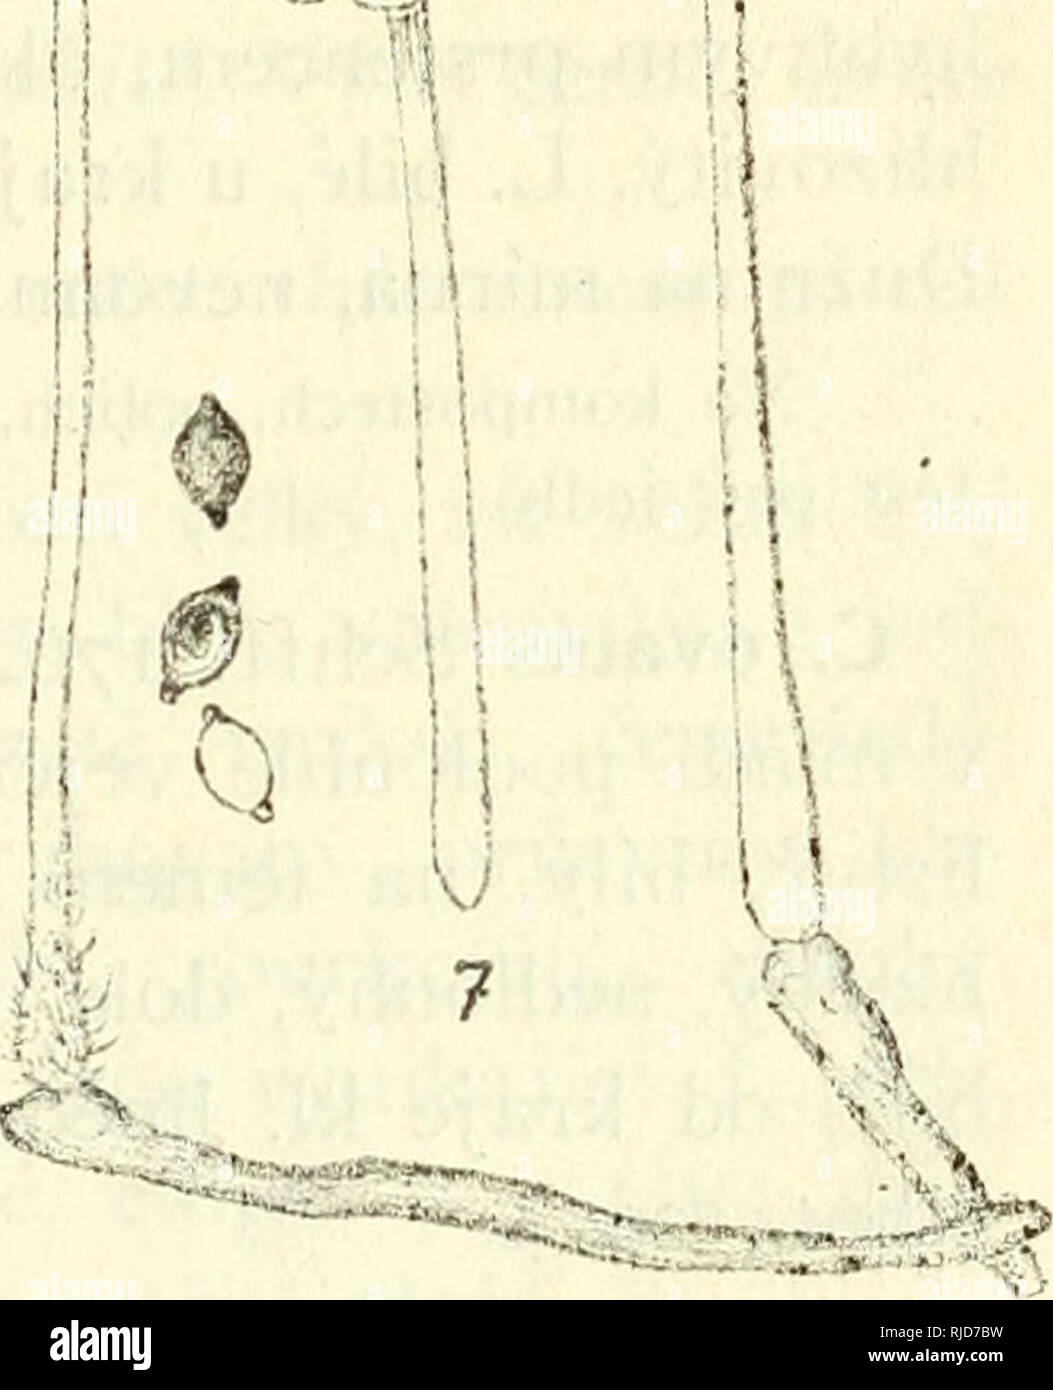 . Cesk houby. Fungi -- Czech Republic. ^m^. ^^ 'V.-^^ (? ,0, ^U ol. Obr. 14. I. Coprinus sterquilinus Fr., 2. C. fimetarius L., 3. C. diaphanus Quél., 4. C. crenatus Lsch., 5. C. ephemeroides Bull., 6 C. sceptrum Ingh., 7. C. niveus Pers. — Vesm?s v p?ir. vel., pouze 3 a 6 slab? zv?tš. Výtr. a cyst. zna?n? zv?tš. Náleží sem sice houby rychle rostoncí, ale krátce trvající. Mnohé nelize aini z exkurse dom? donésti, nebo? se cestou rozplynou a zimizí. Proto t?eba bráti substrát s mladými zárodky, jež pak doma pod zvoncem sklen?ným vyrostou. N?které útlé driuhy v}- r?stají pouze za rána a trvají s Stock Photo